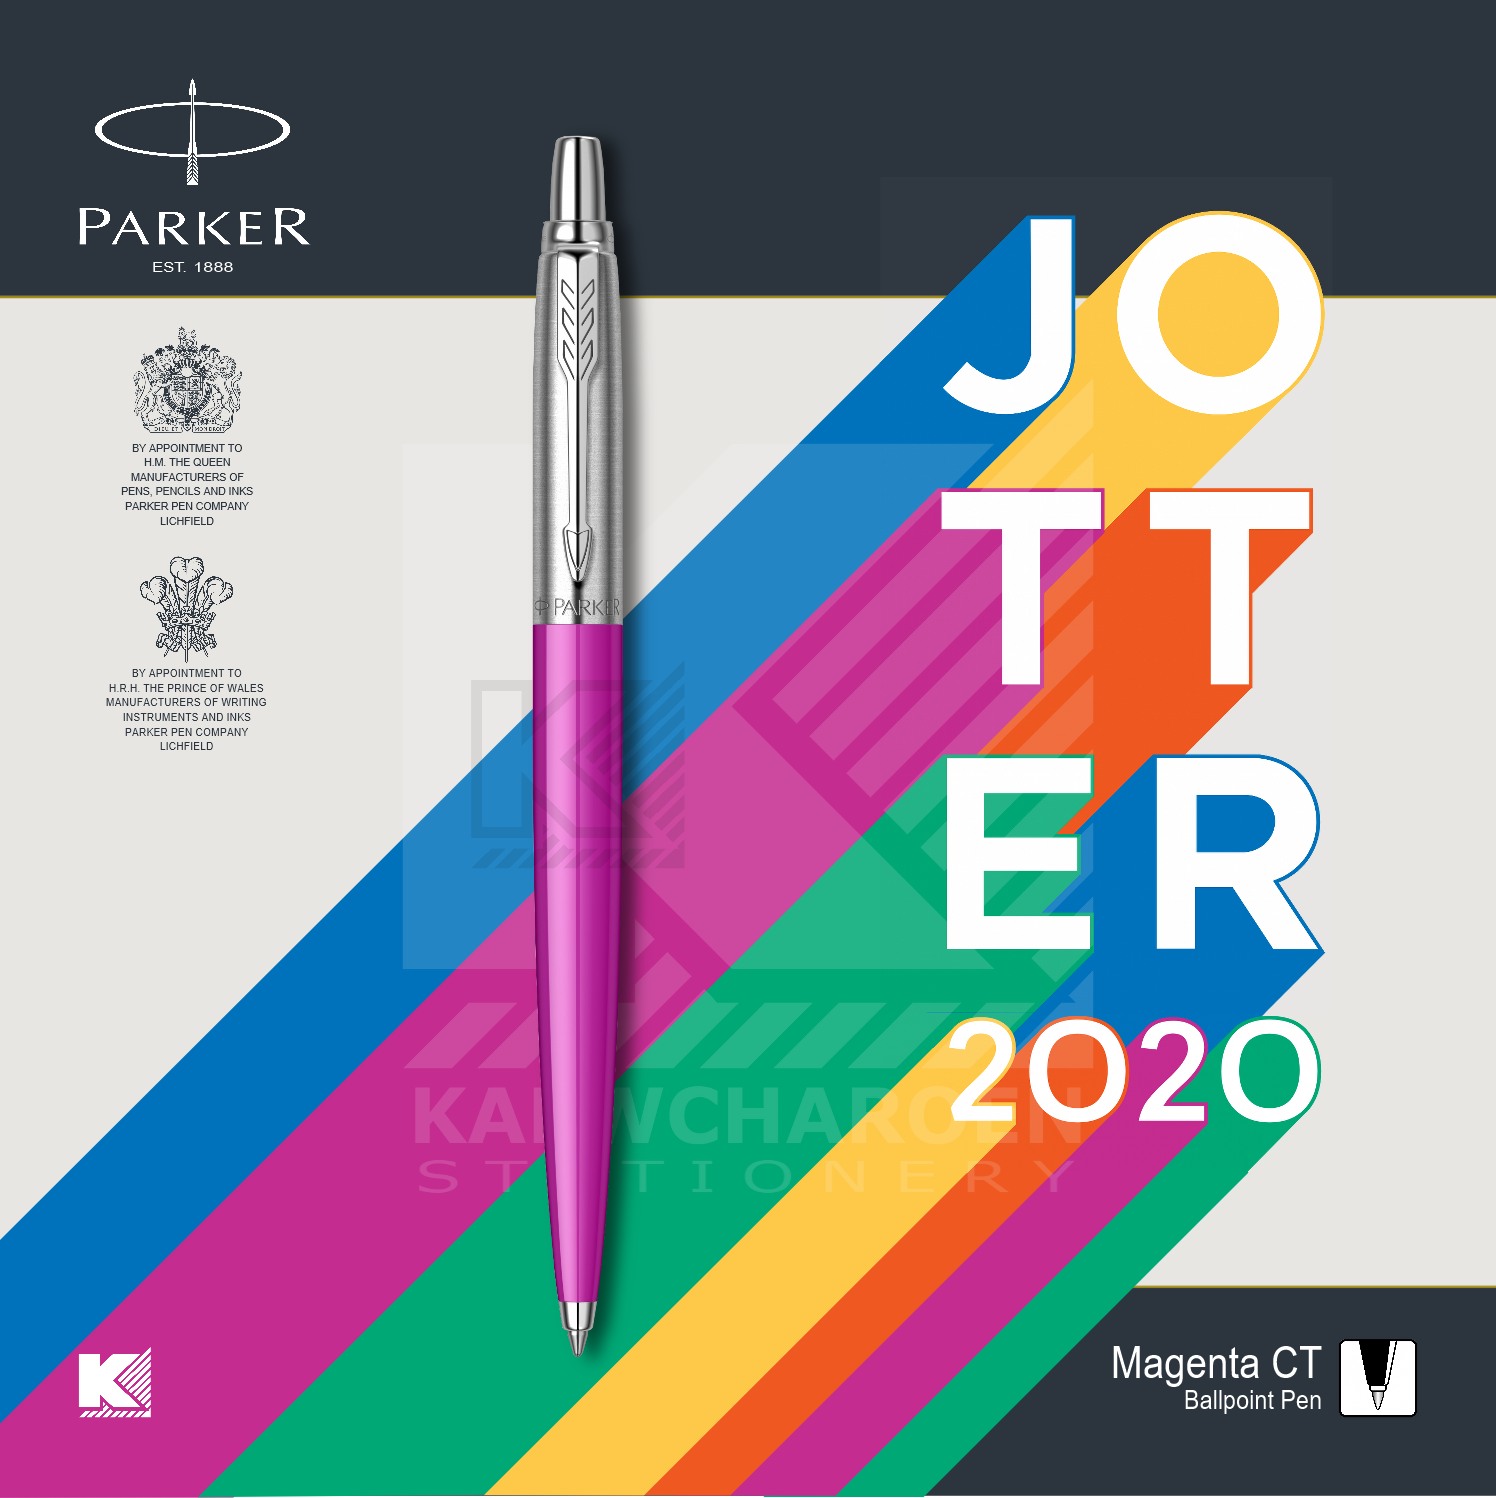 ปากกาลูกลื่น Parker Jotter Originals Series 2020 สี ชมพูมาเจนต้า สี ชมพูมาเจนต้า